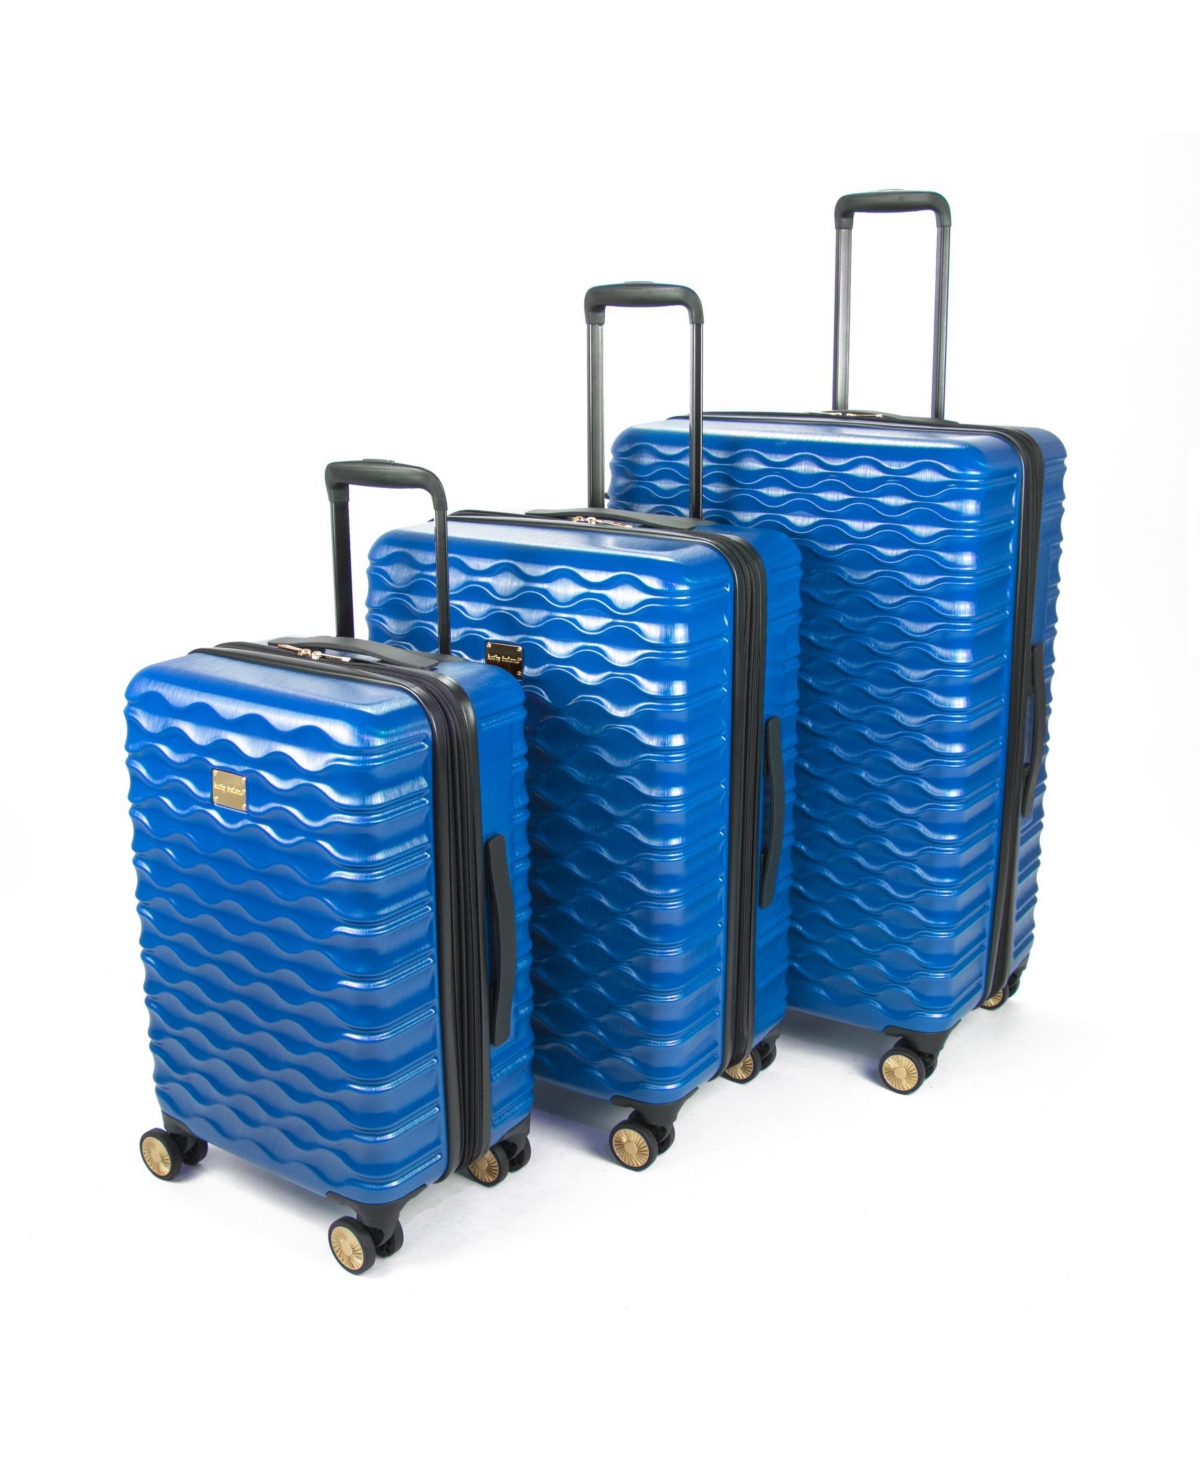 Maisy Hardside Luggage Set, 3 Piece - Red